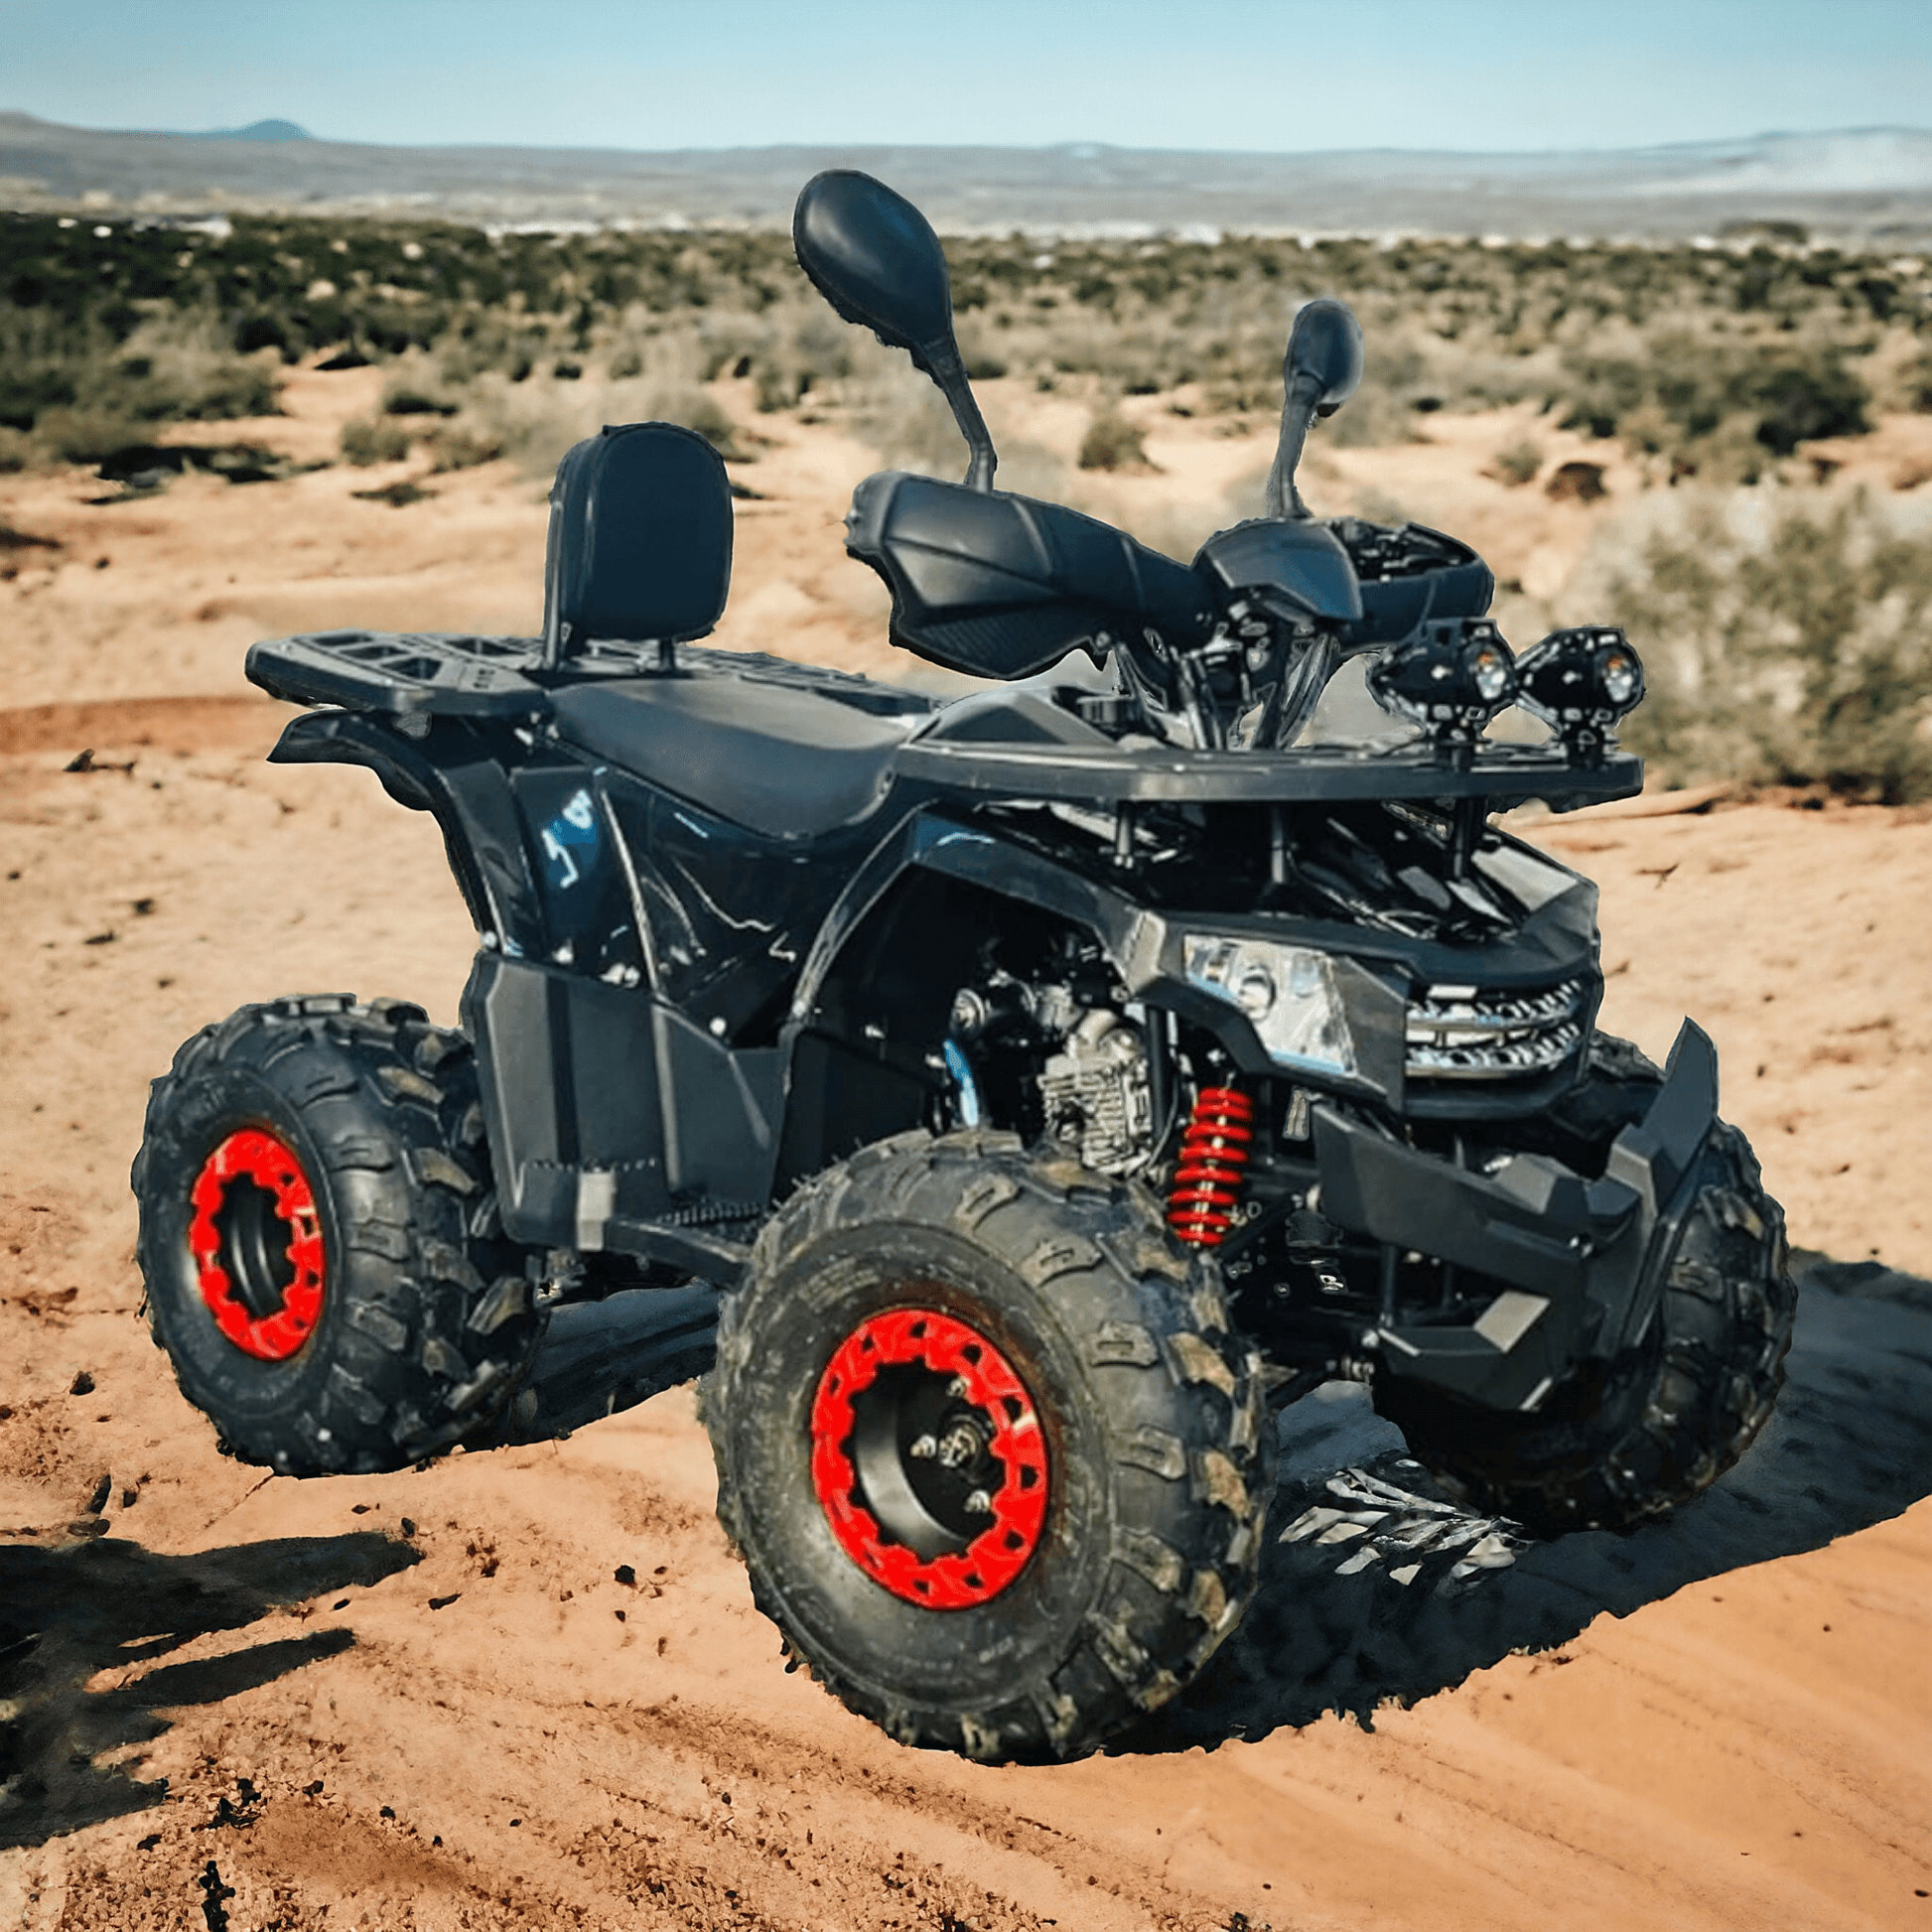 PATOYS | 135cc Powered MOUZER ATV - Black ATVs & UTVs PATOYS